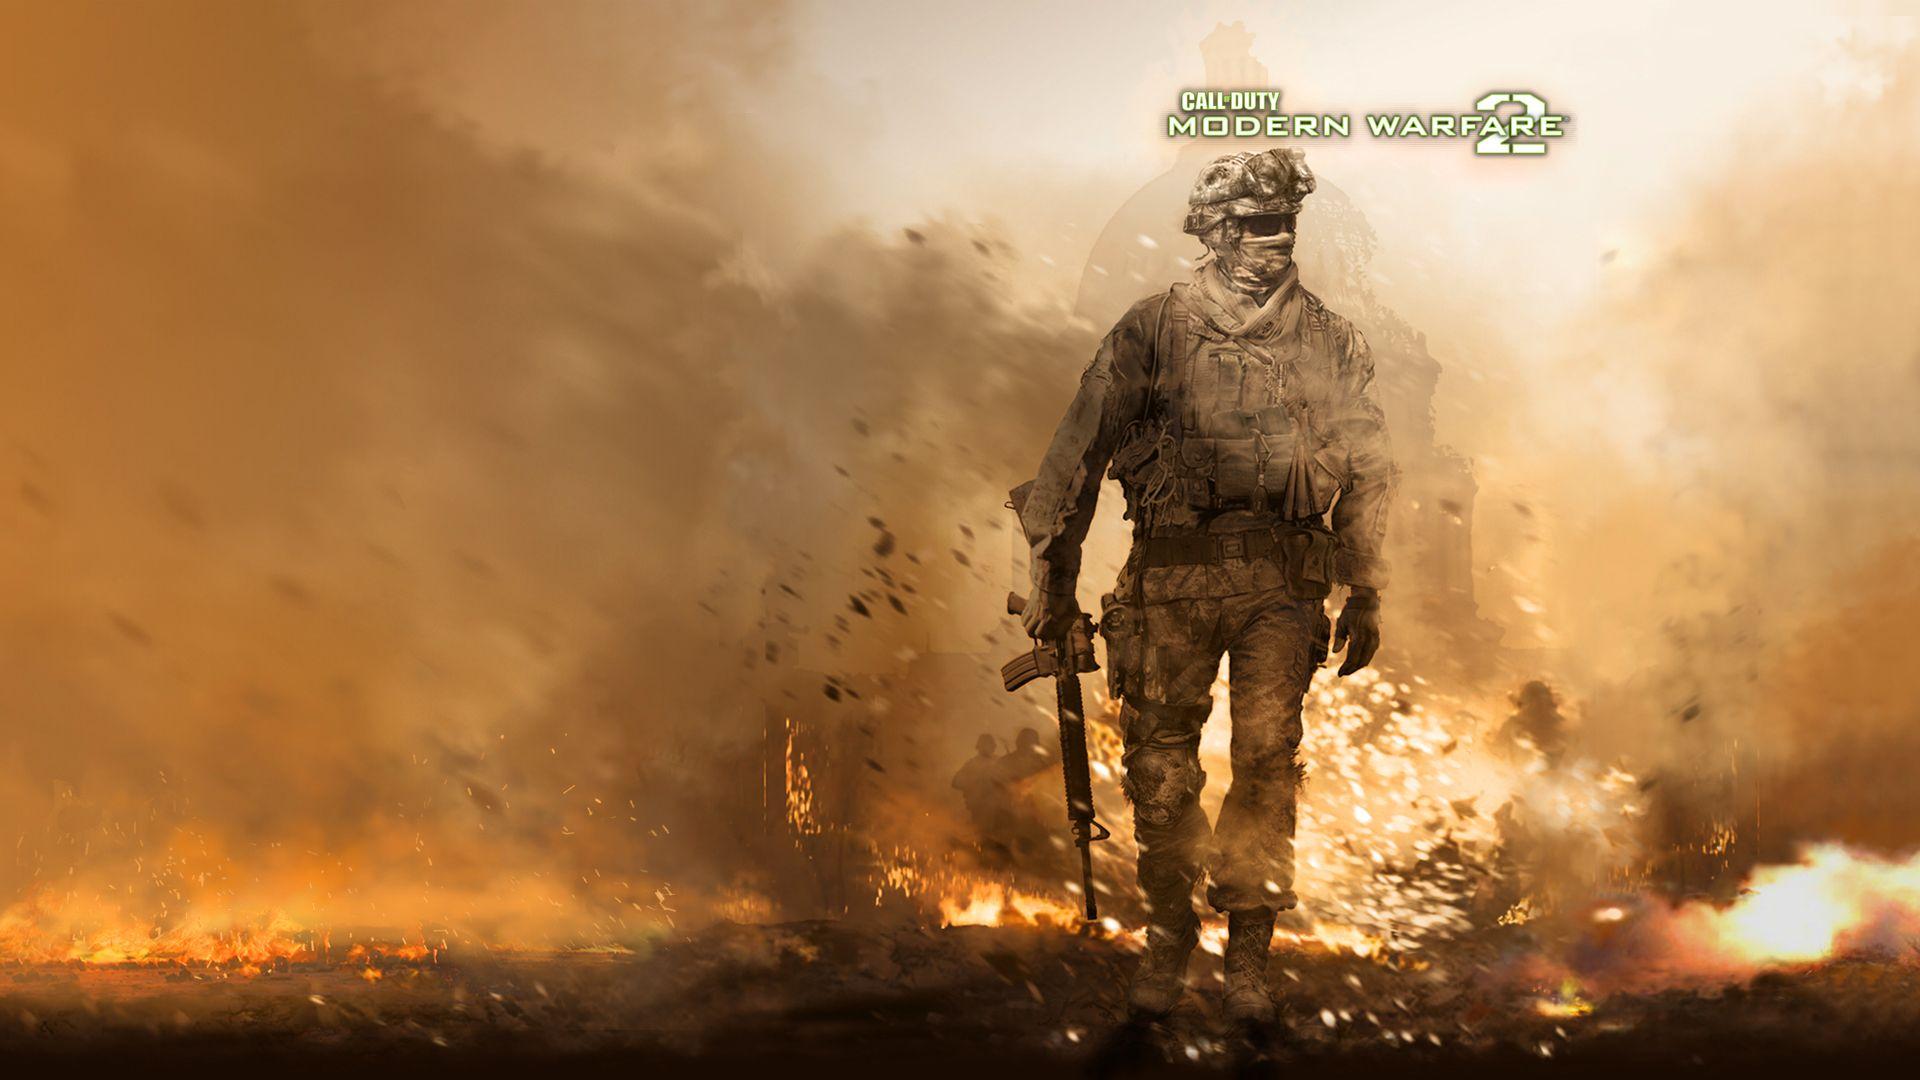 ZZL:78 Of Duty Modern Warfare 2 HD Image Free Large Image